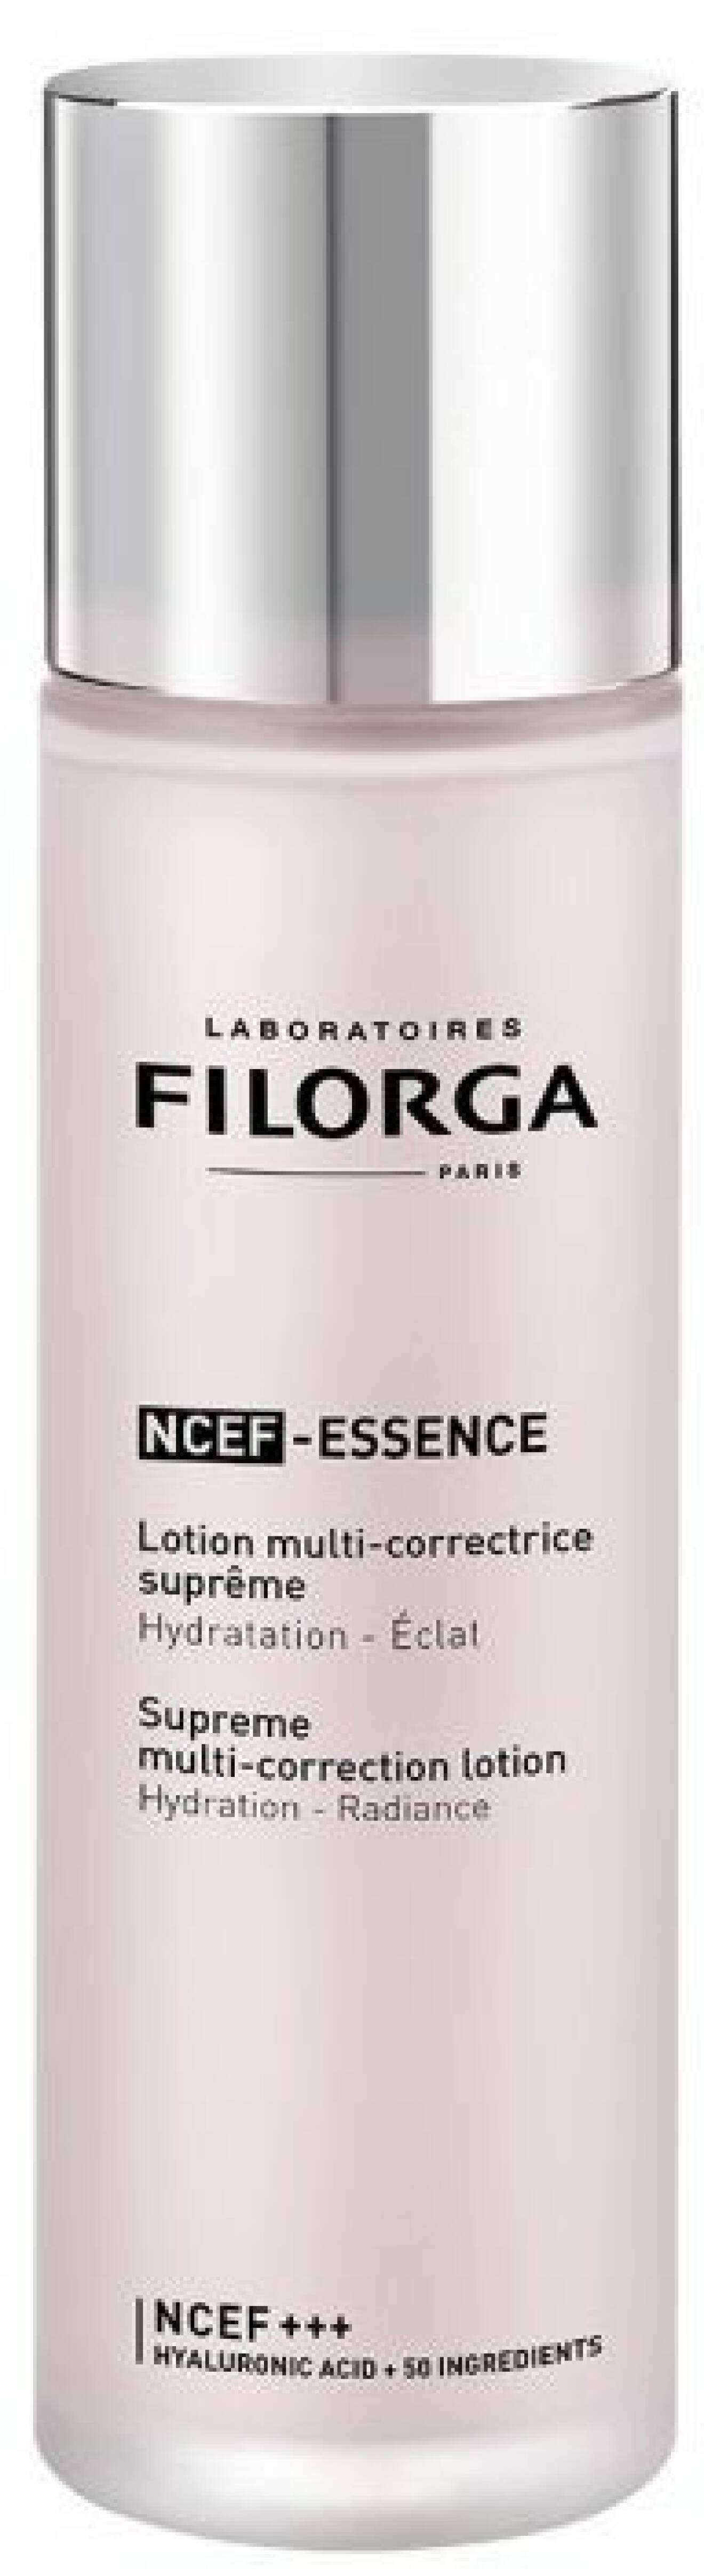 NCEF-Essence från Filorga